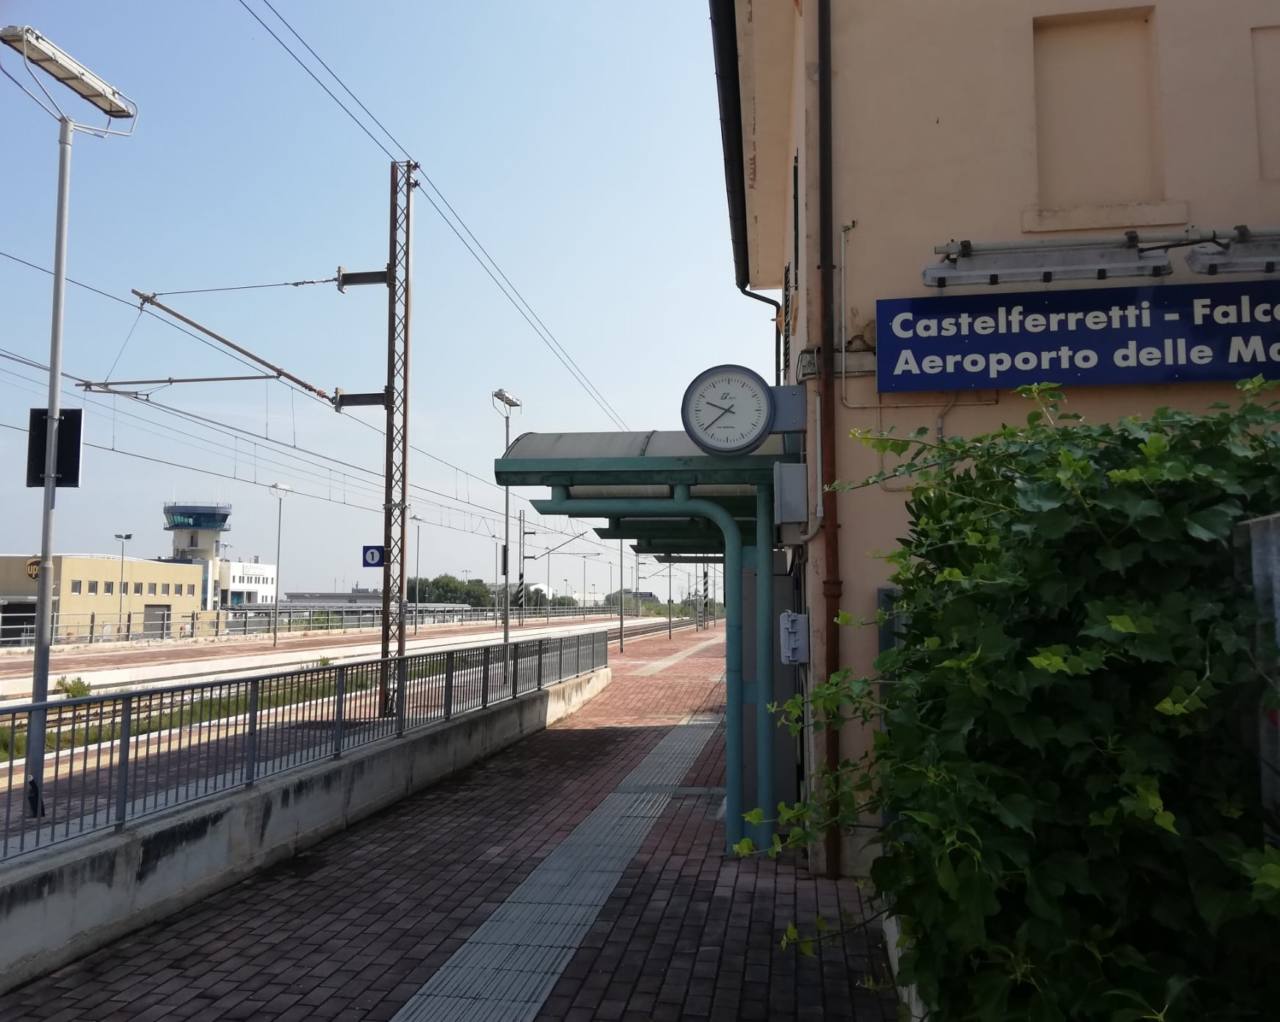 Castelferretti-Falconara Marche Airport (Castelferretti-Falconara Aeroporto delle Marche) Station